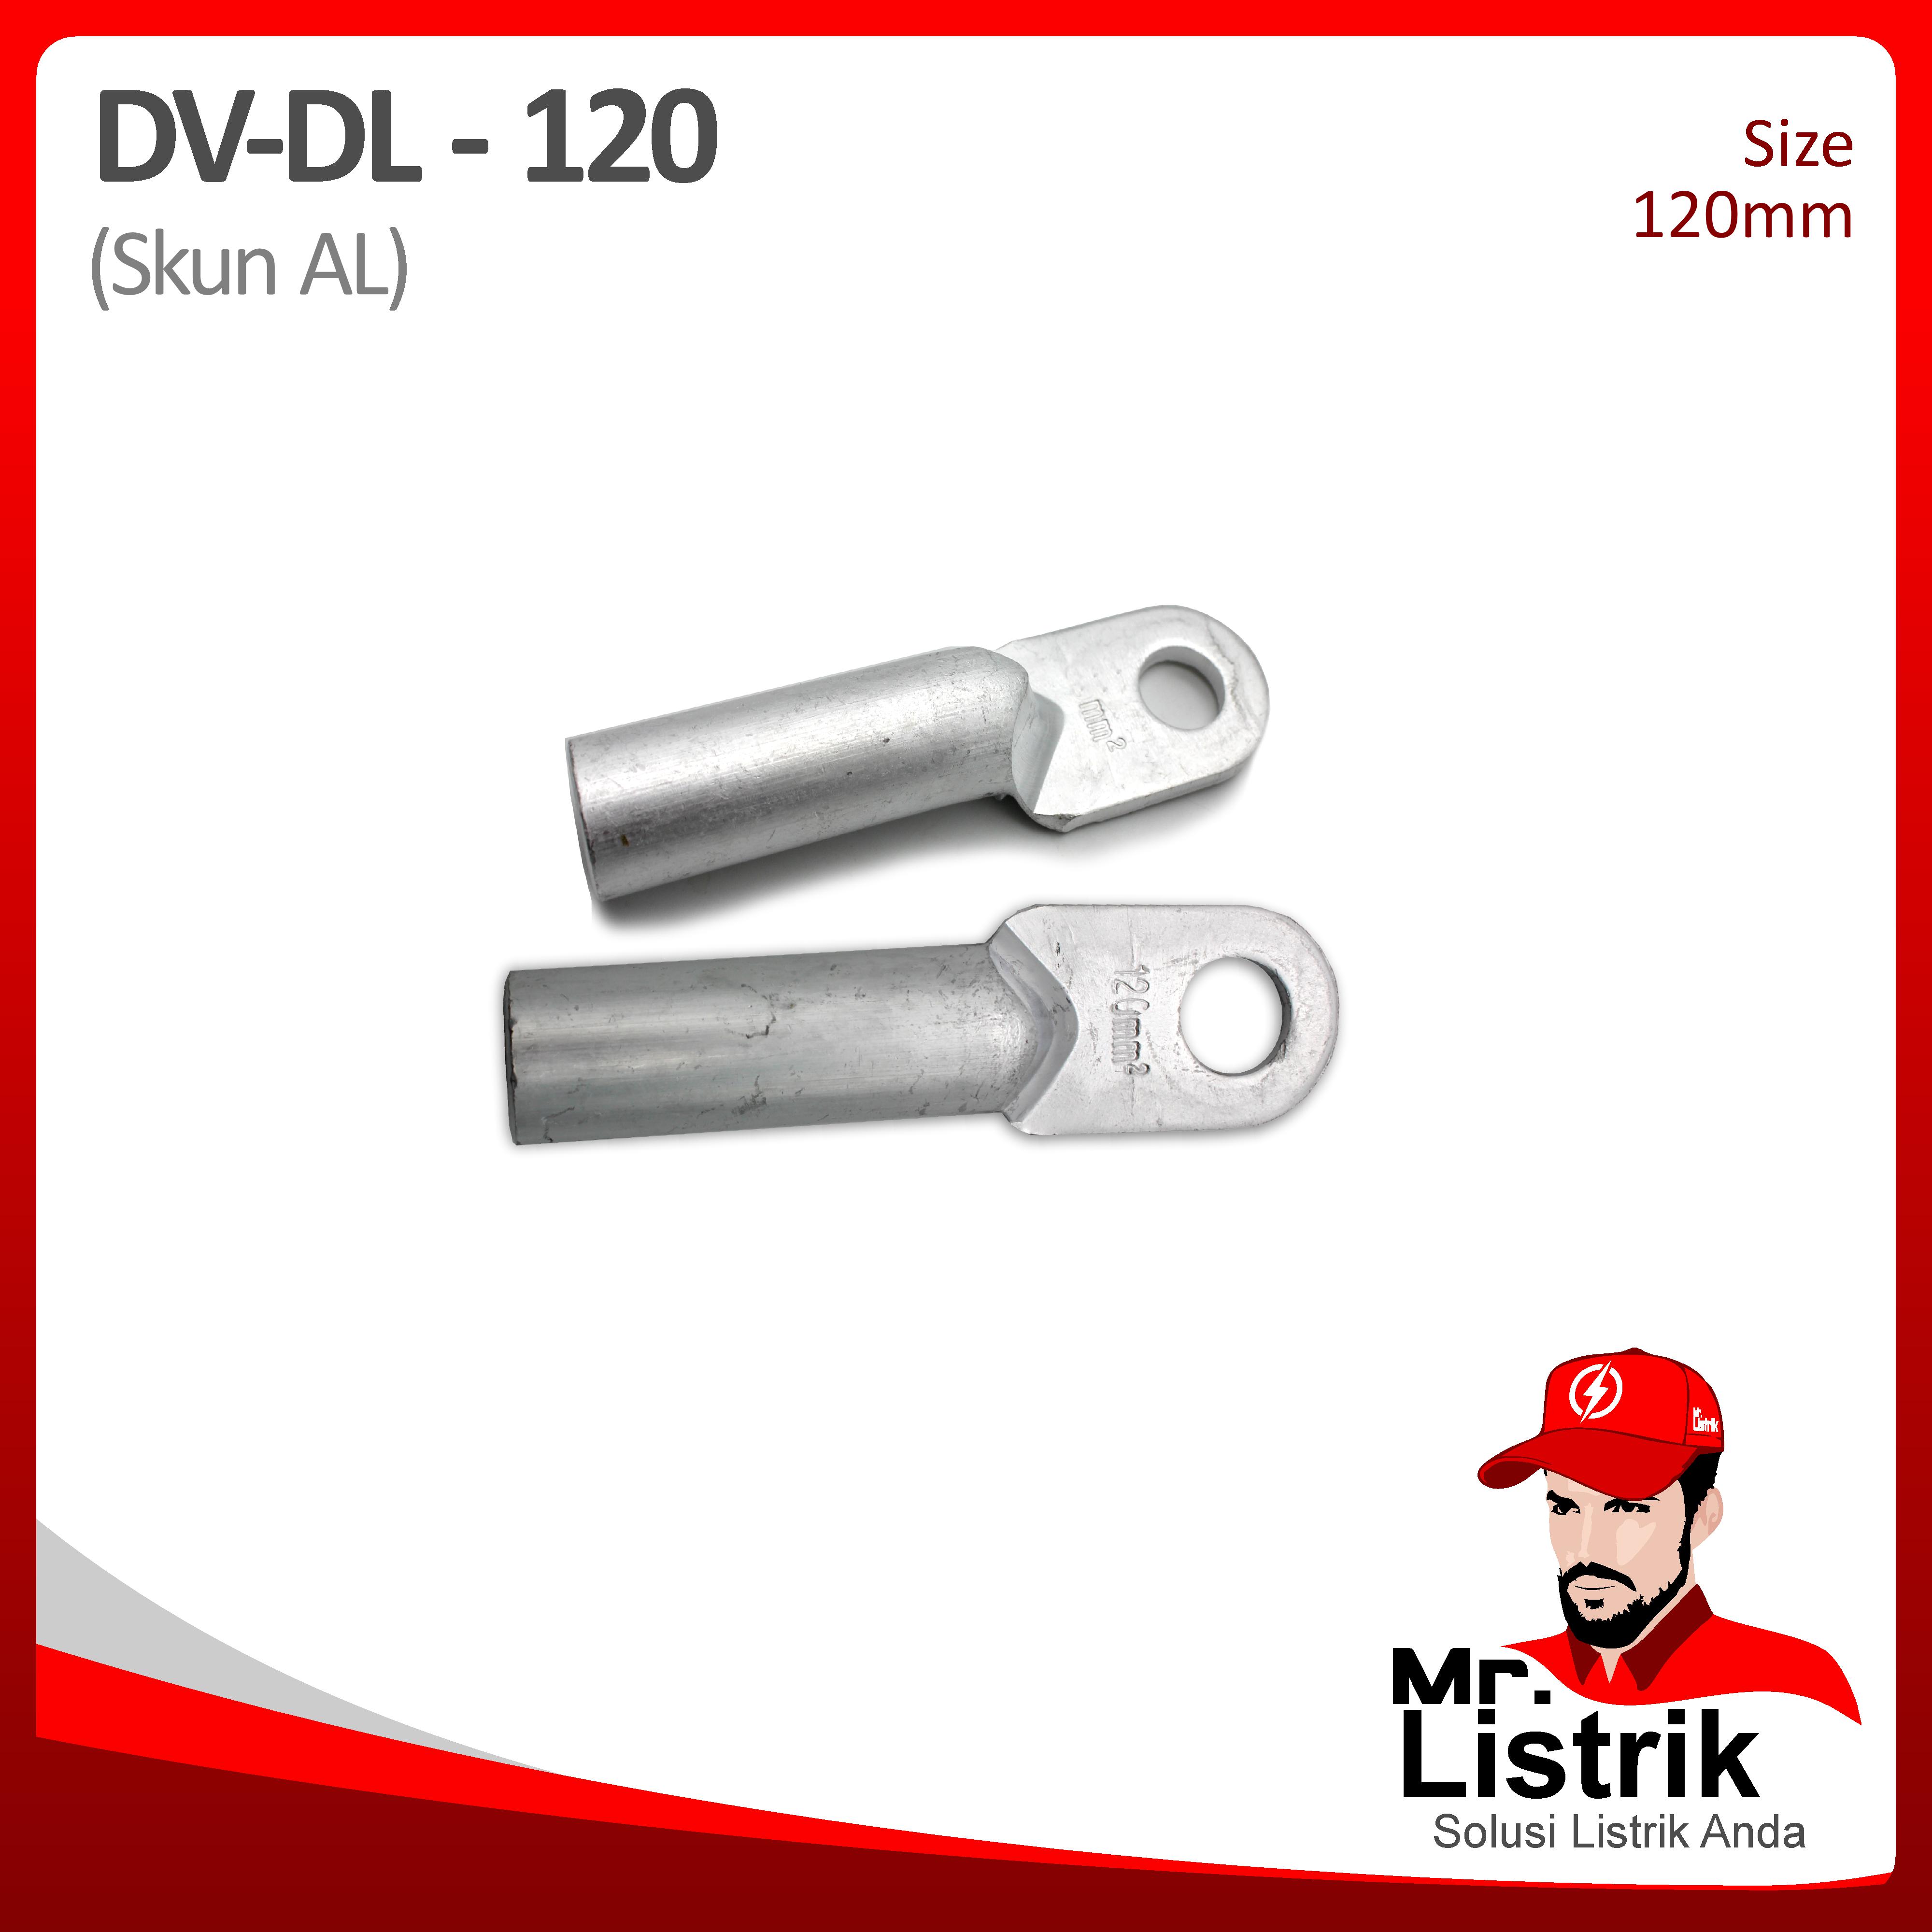 Skun AL 120mm DV DL-120